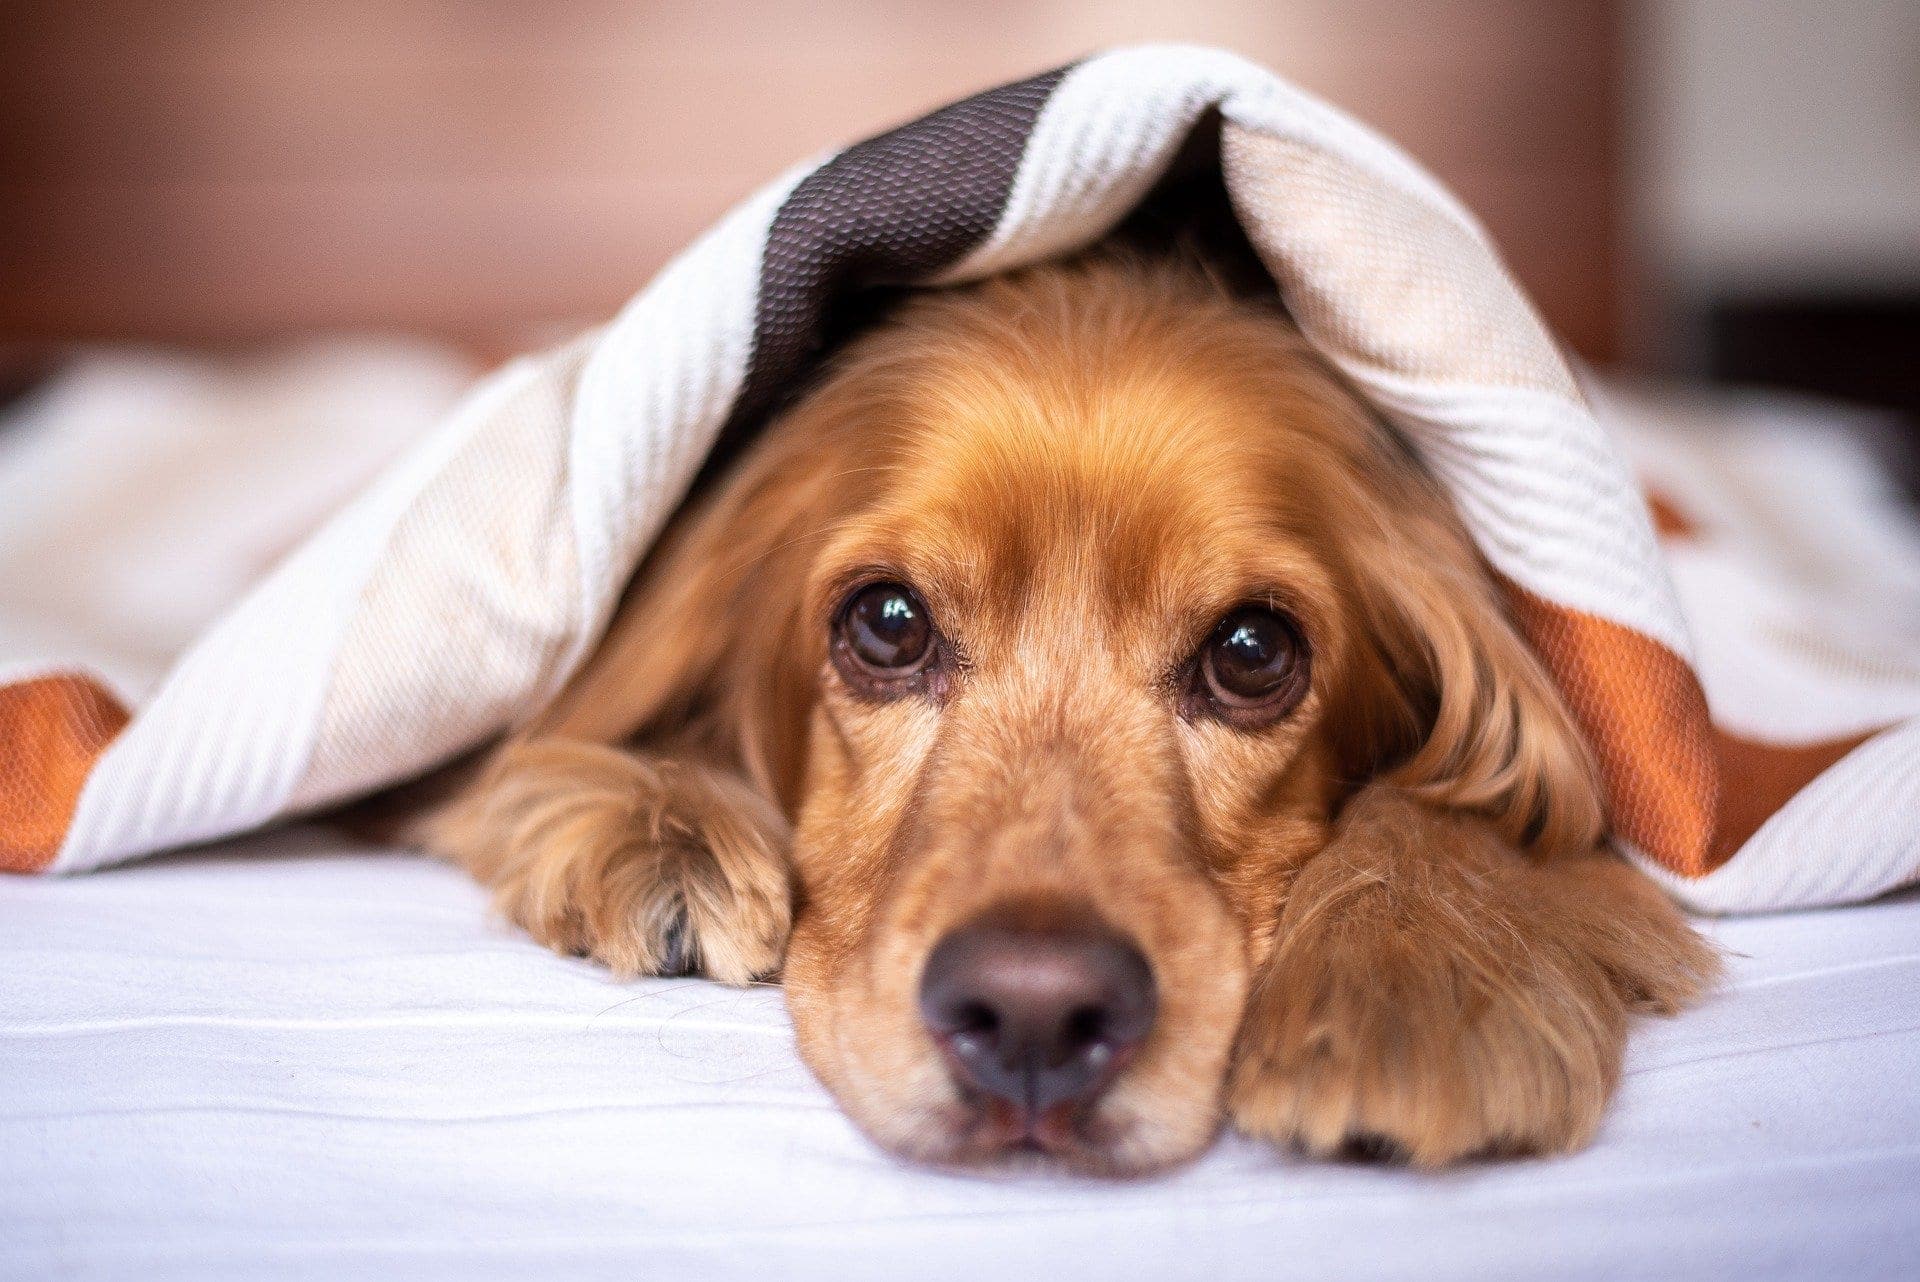 Hund liegt unter einer Decke